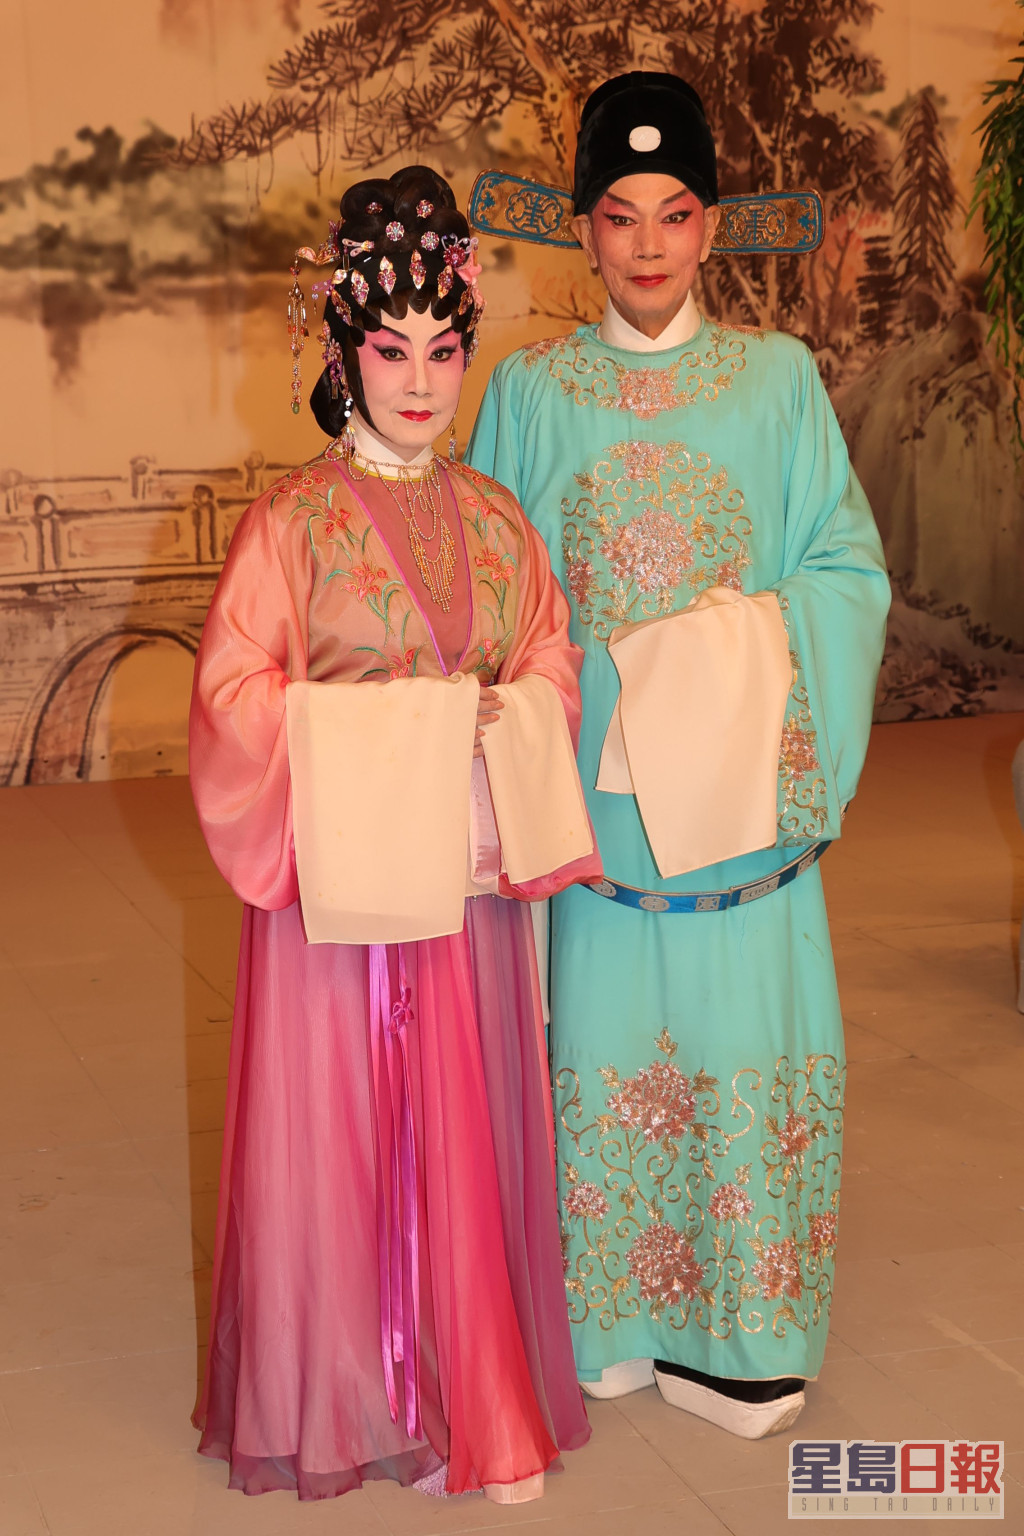 两人为《欢乐满东华2022》录影粤剧折子戏《紫钗记之阳关折柳》。